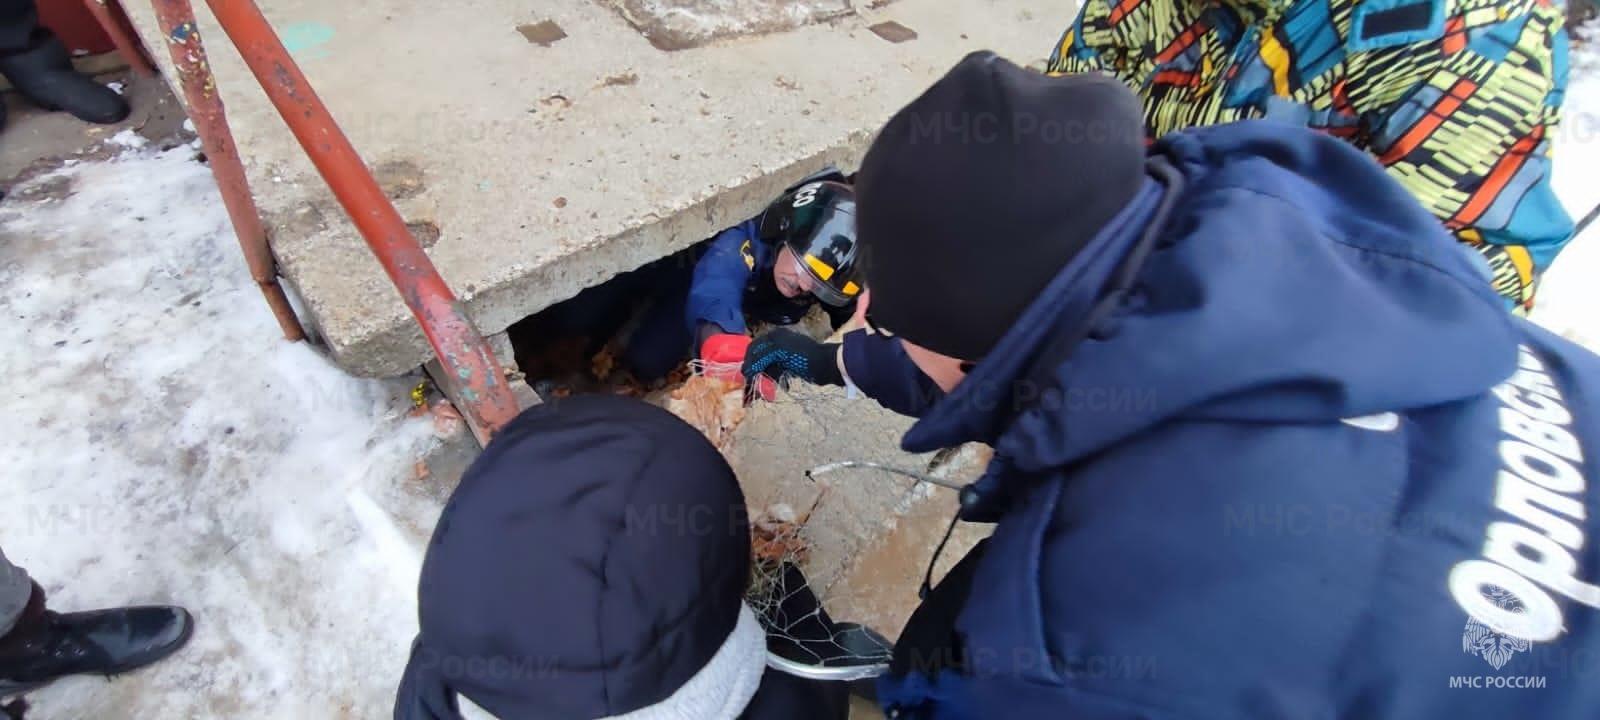 Орловские спасатели залезли под плиту подъезда, чтобы спасти кошку